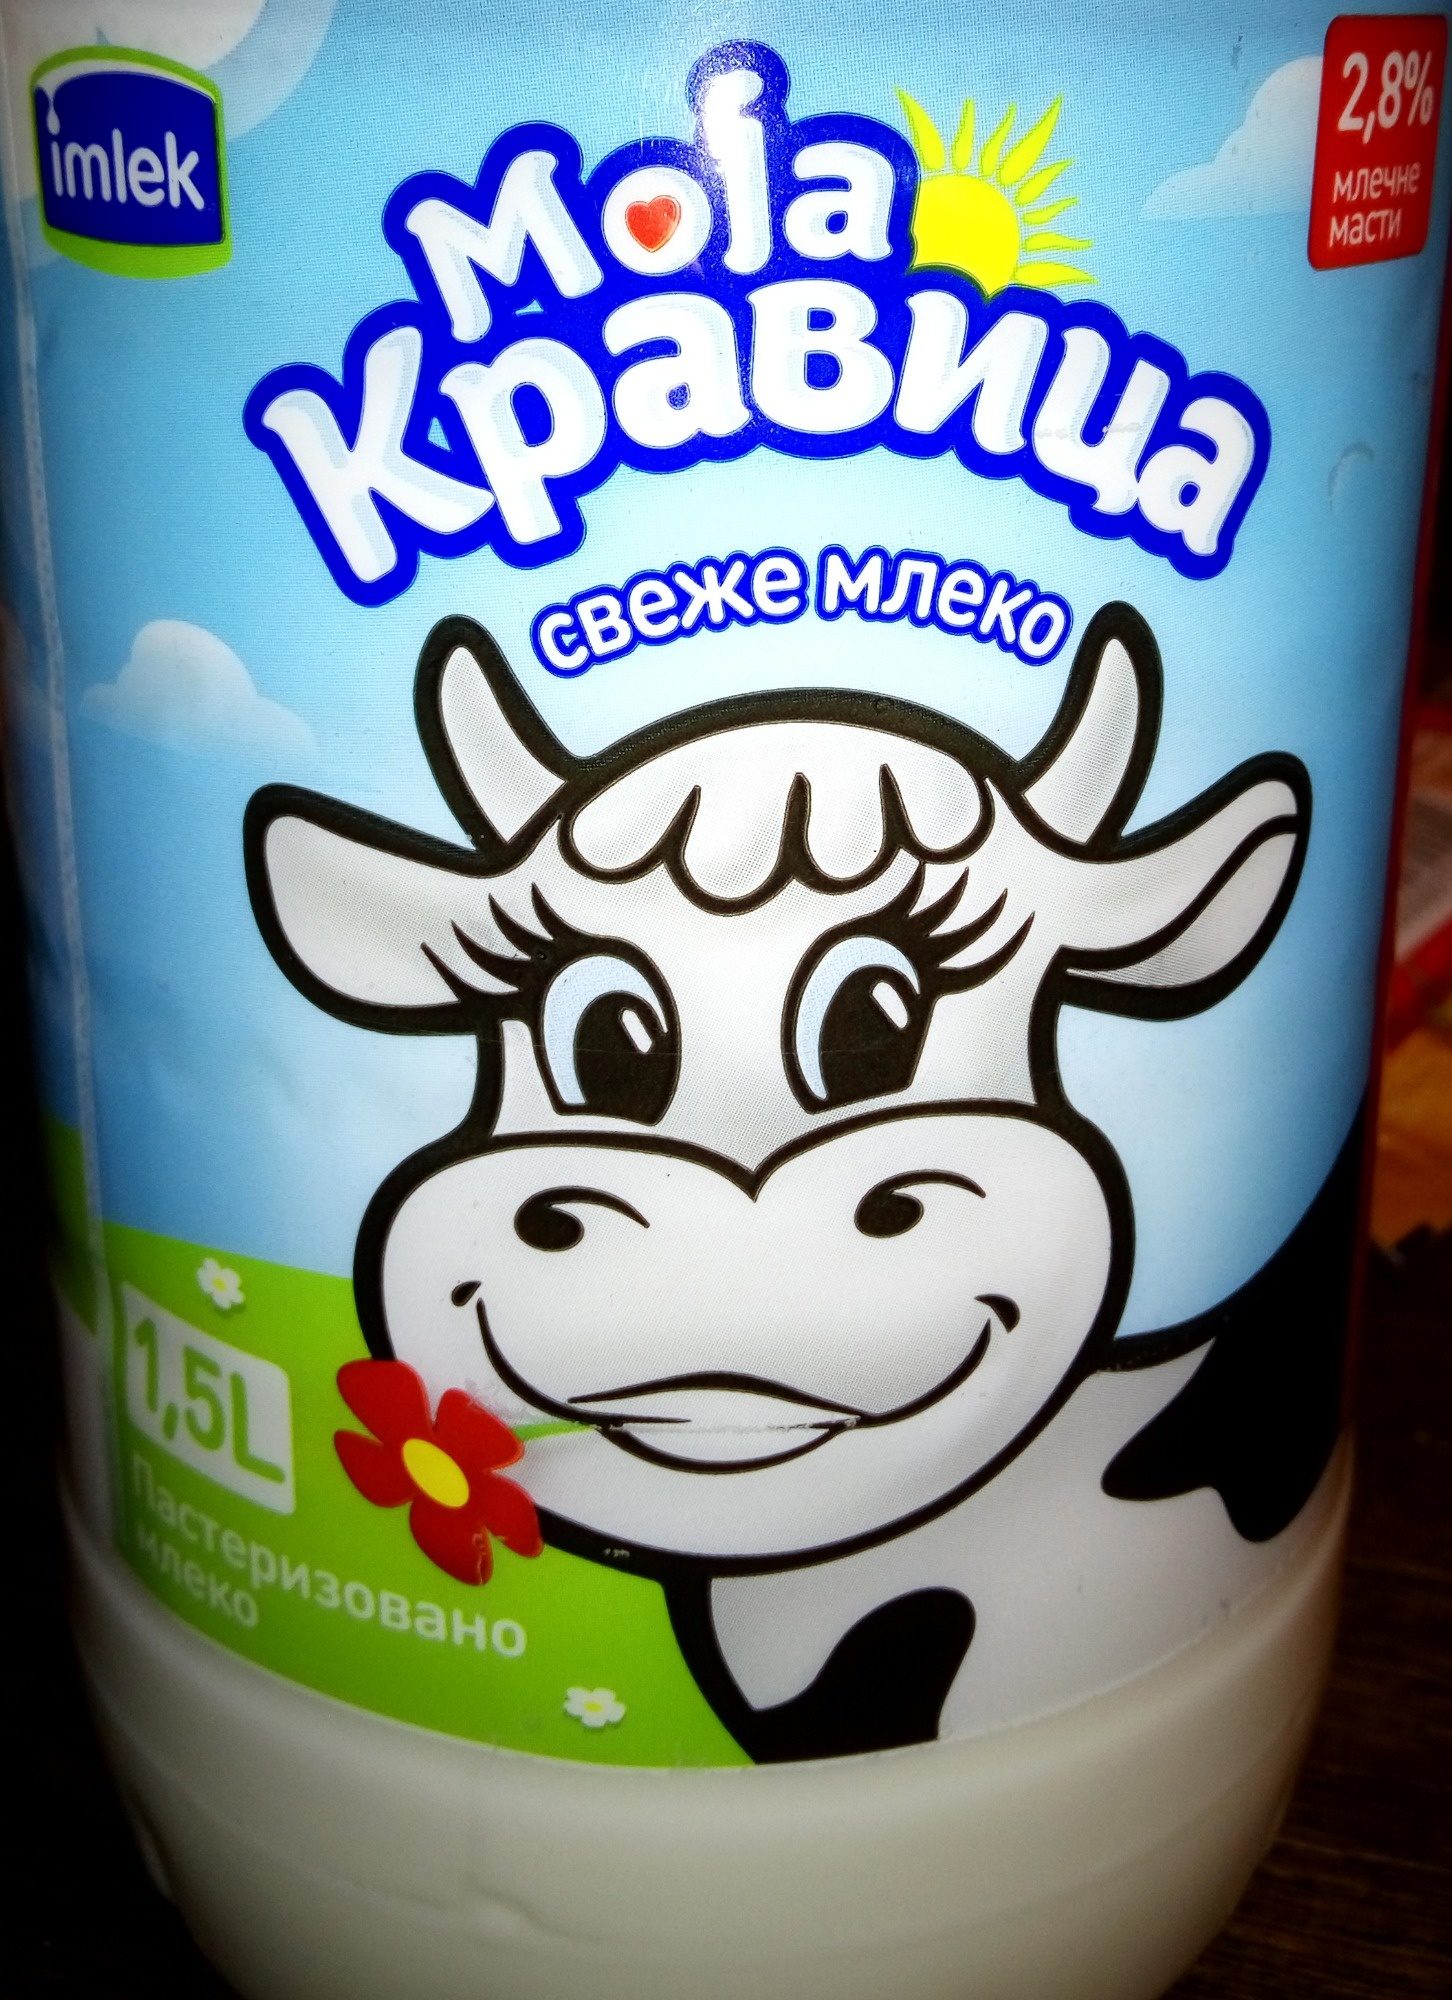 Moja kravica sveže mleko 2.8% - Produit - sr